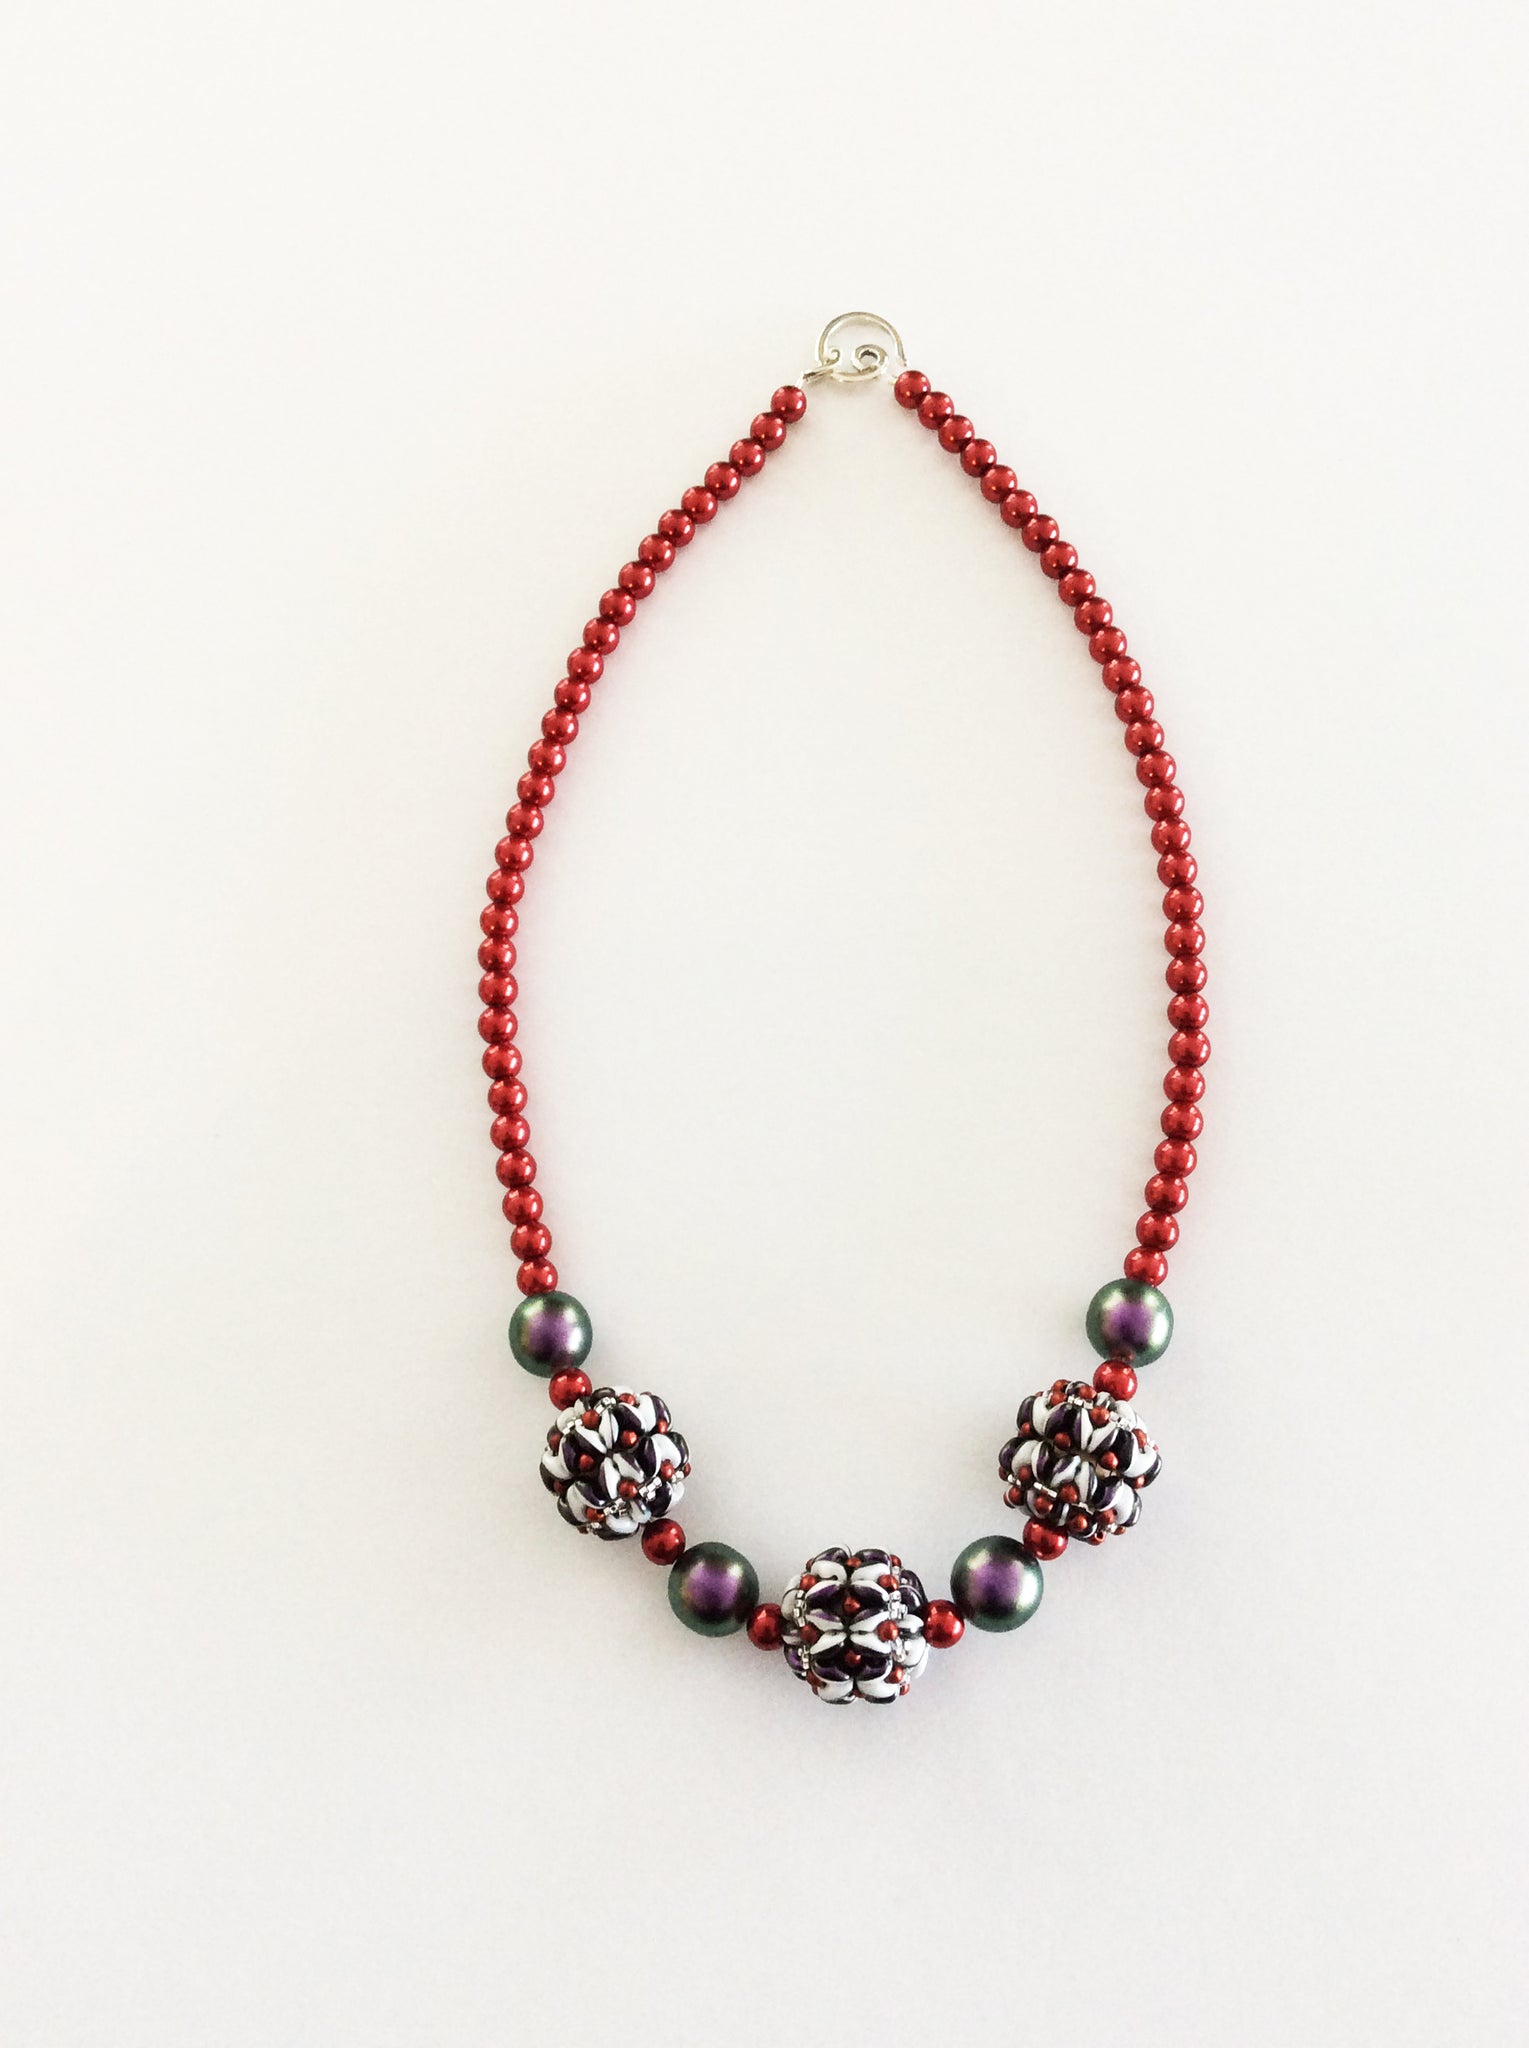 Necklace #4 - Jewelry